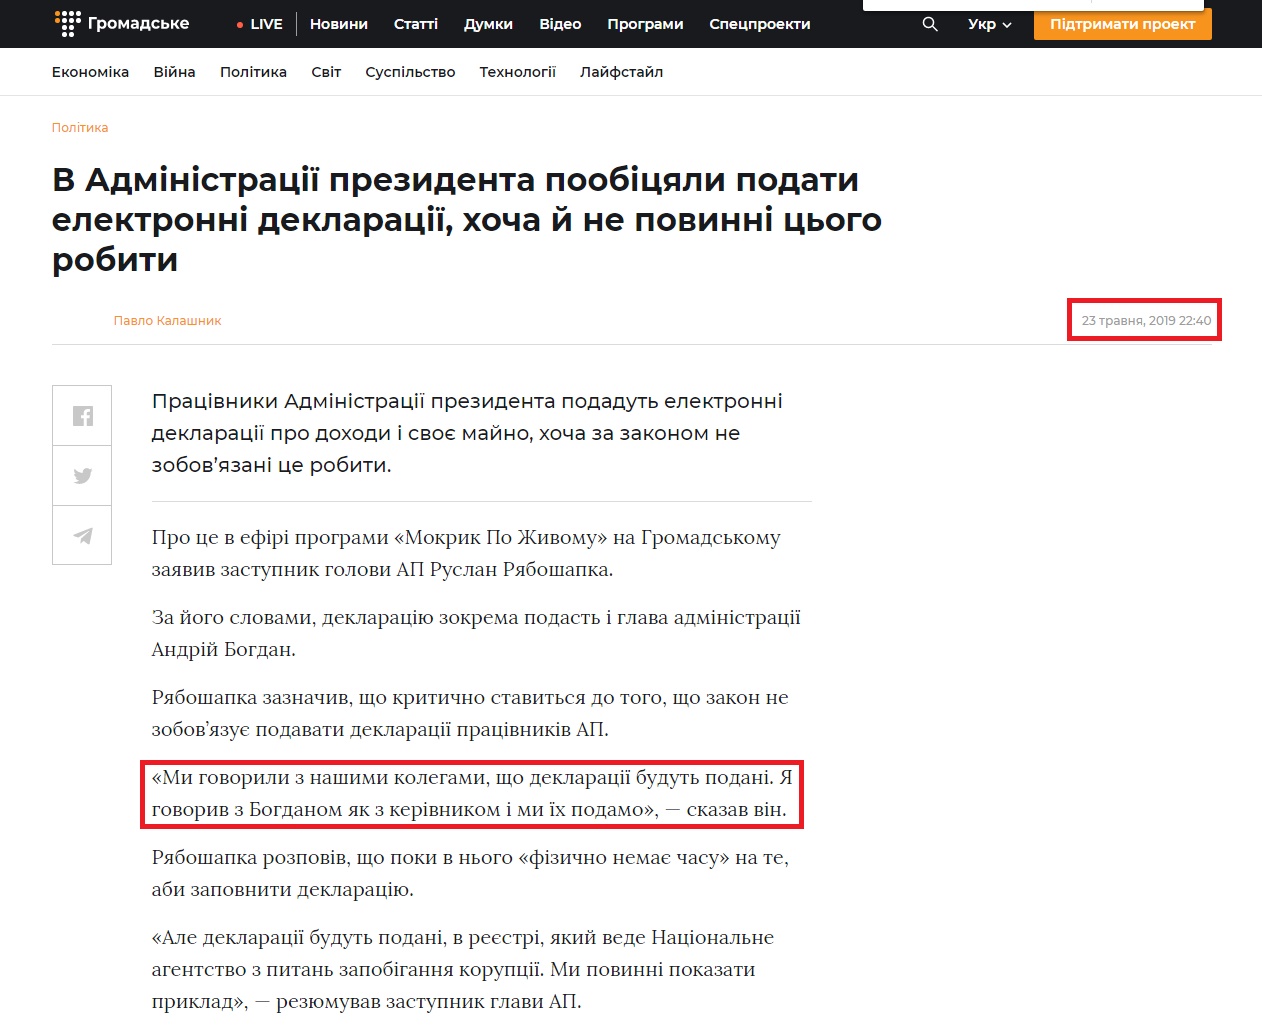 https://hromadske.ua/posts/v-administraciyi-prezidenta-poobicyali-podati-elektronni-deklaraciyi-hocha-j-ne-povinni-cogo-robiti